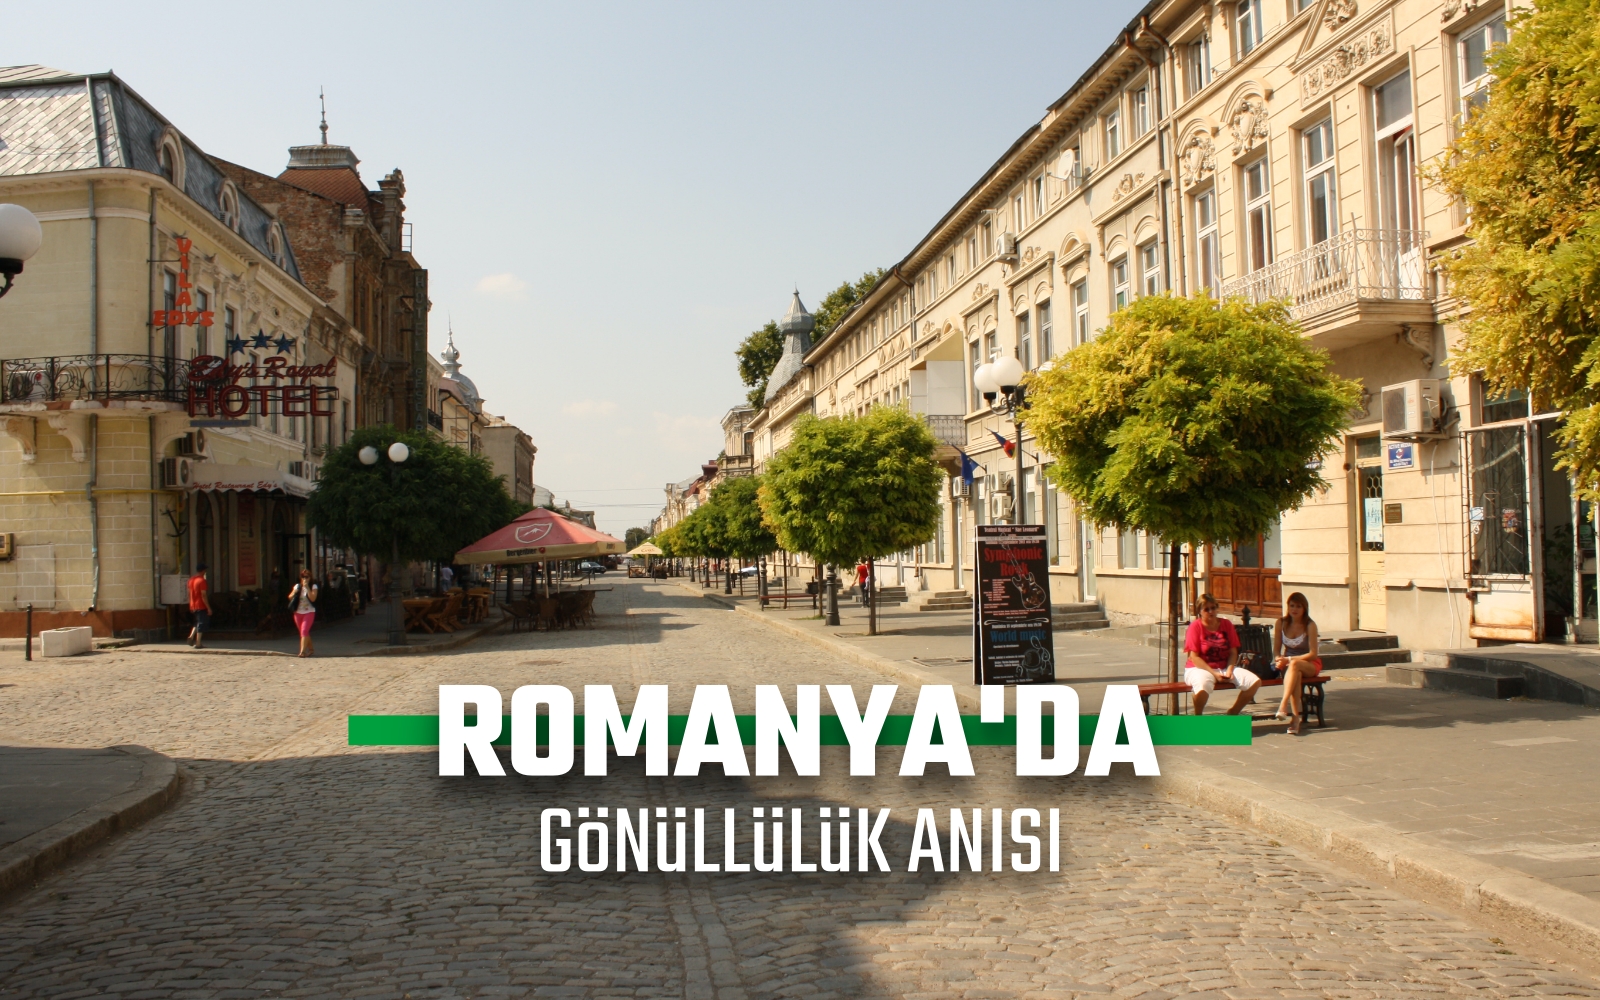 ROMANYA’DA GÖNÜLLÜLÜK ANISI